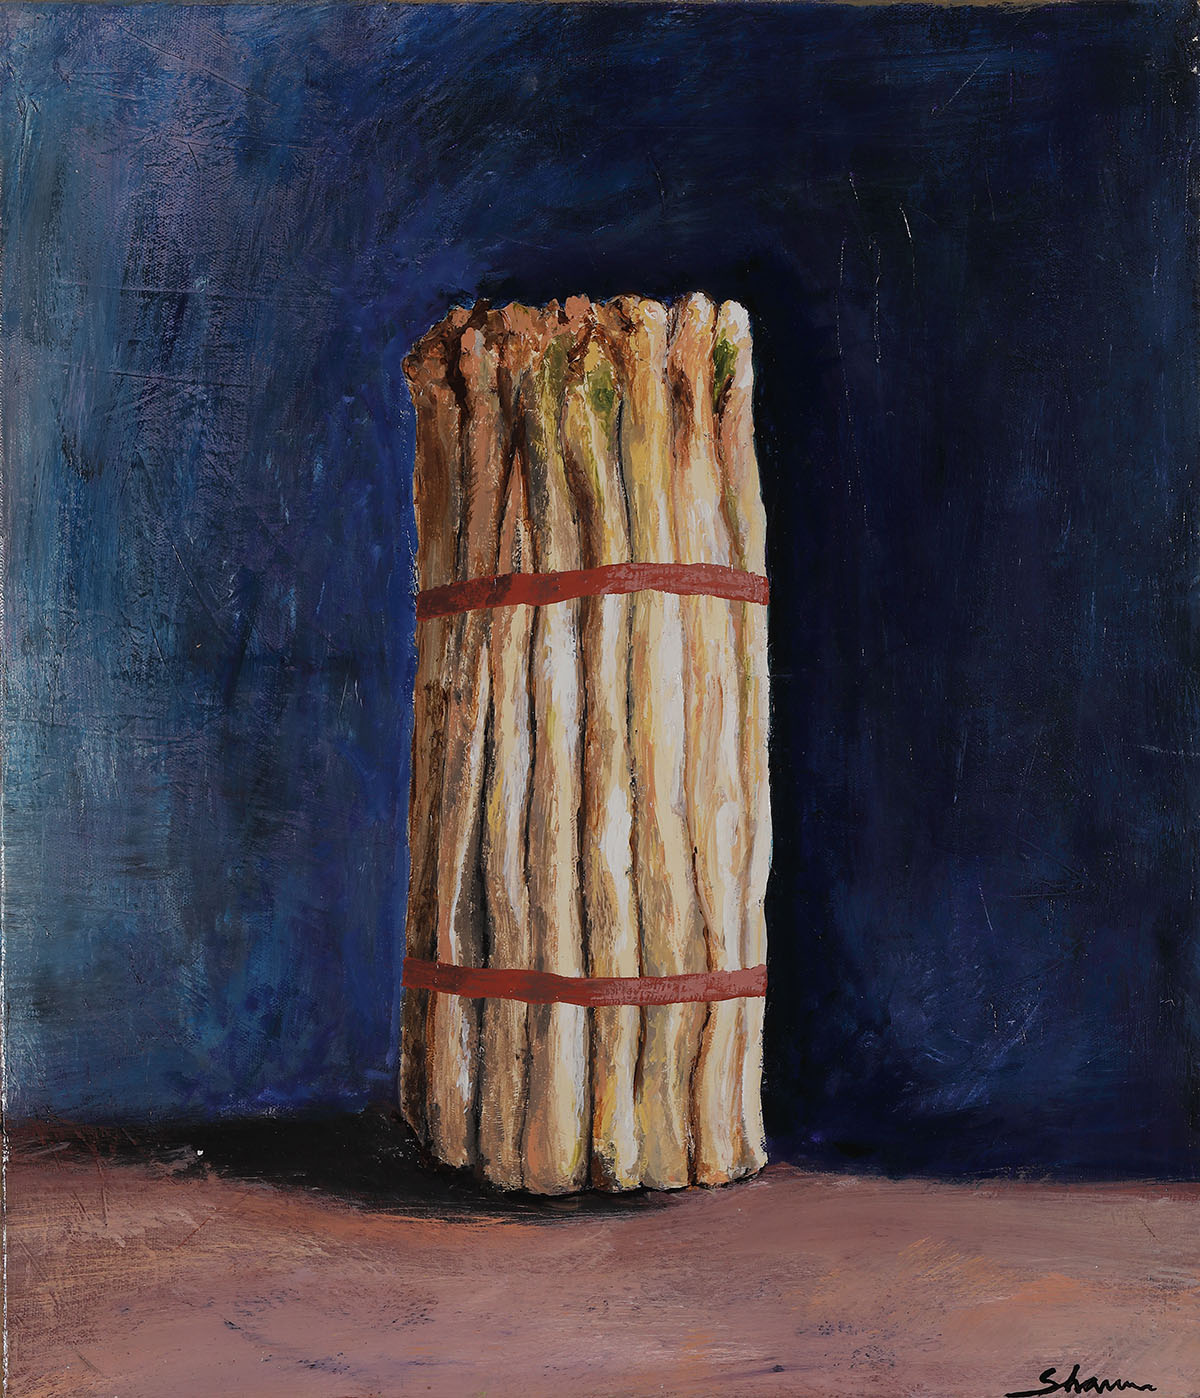 White Asparagus, Acrylic on canvas, 46 x 53cm, 2016